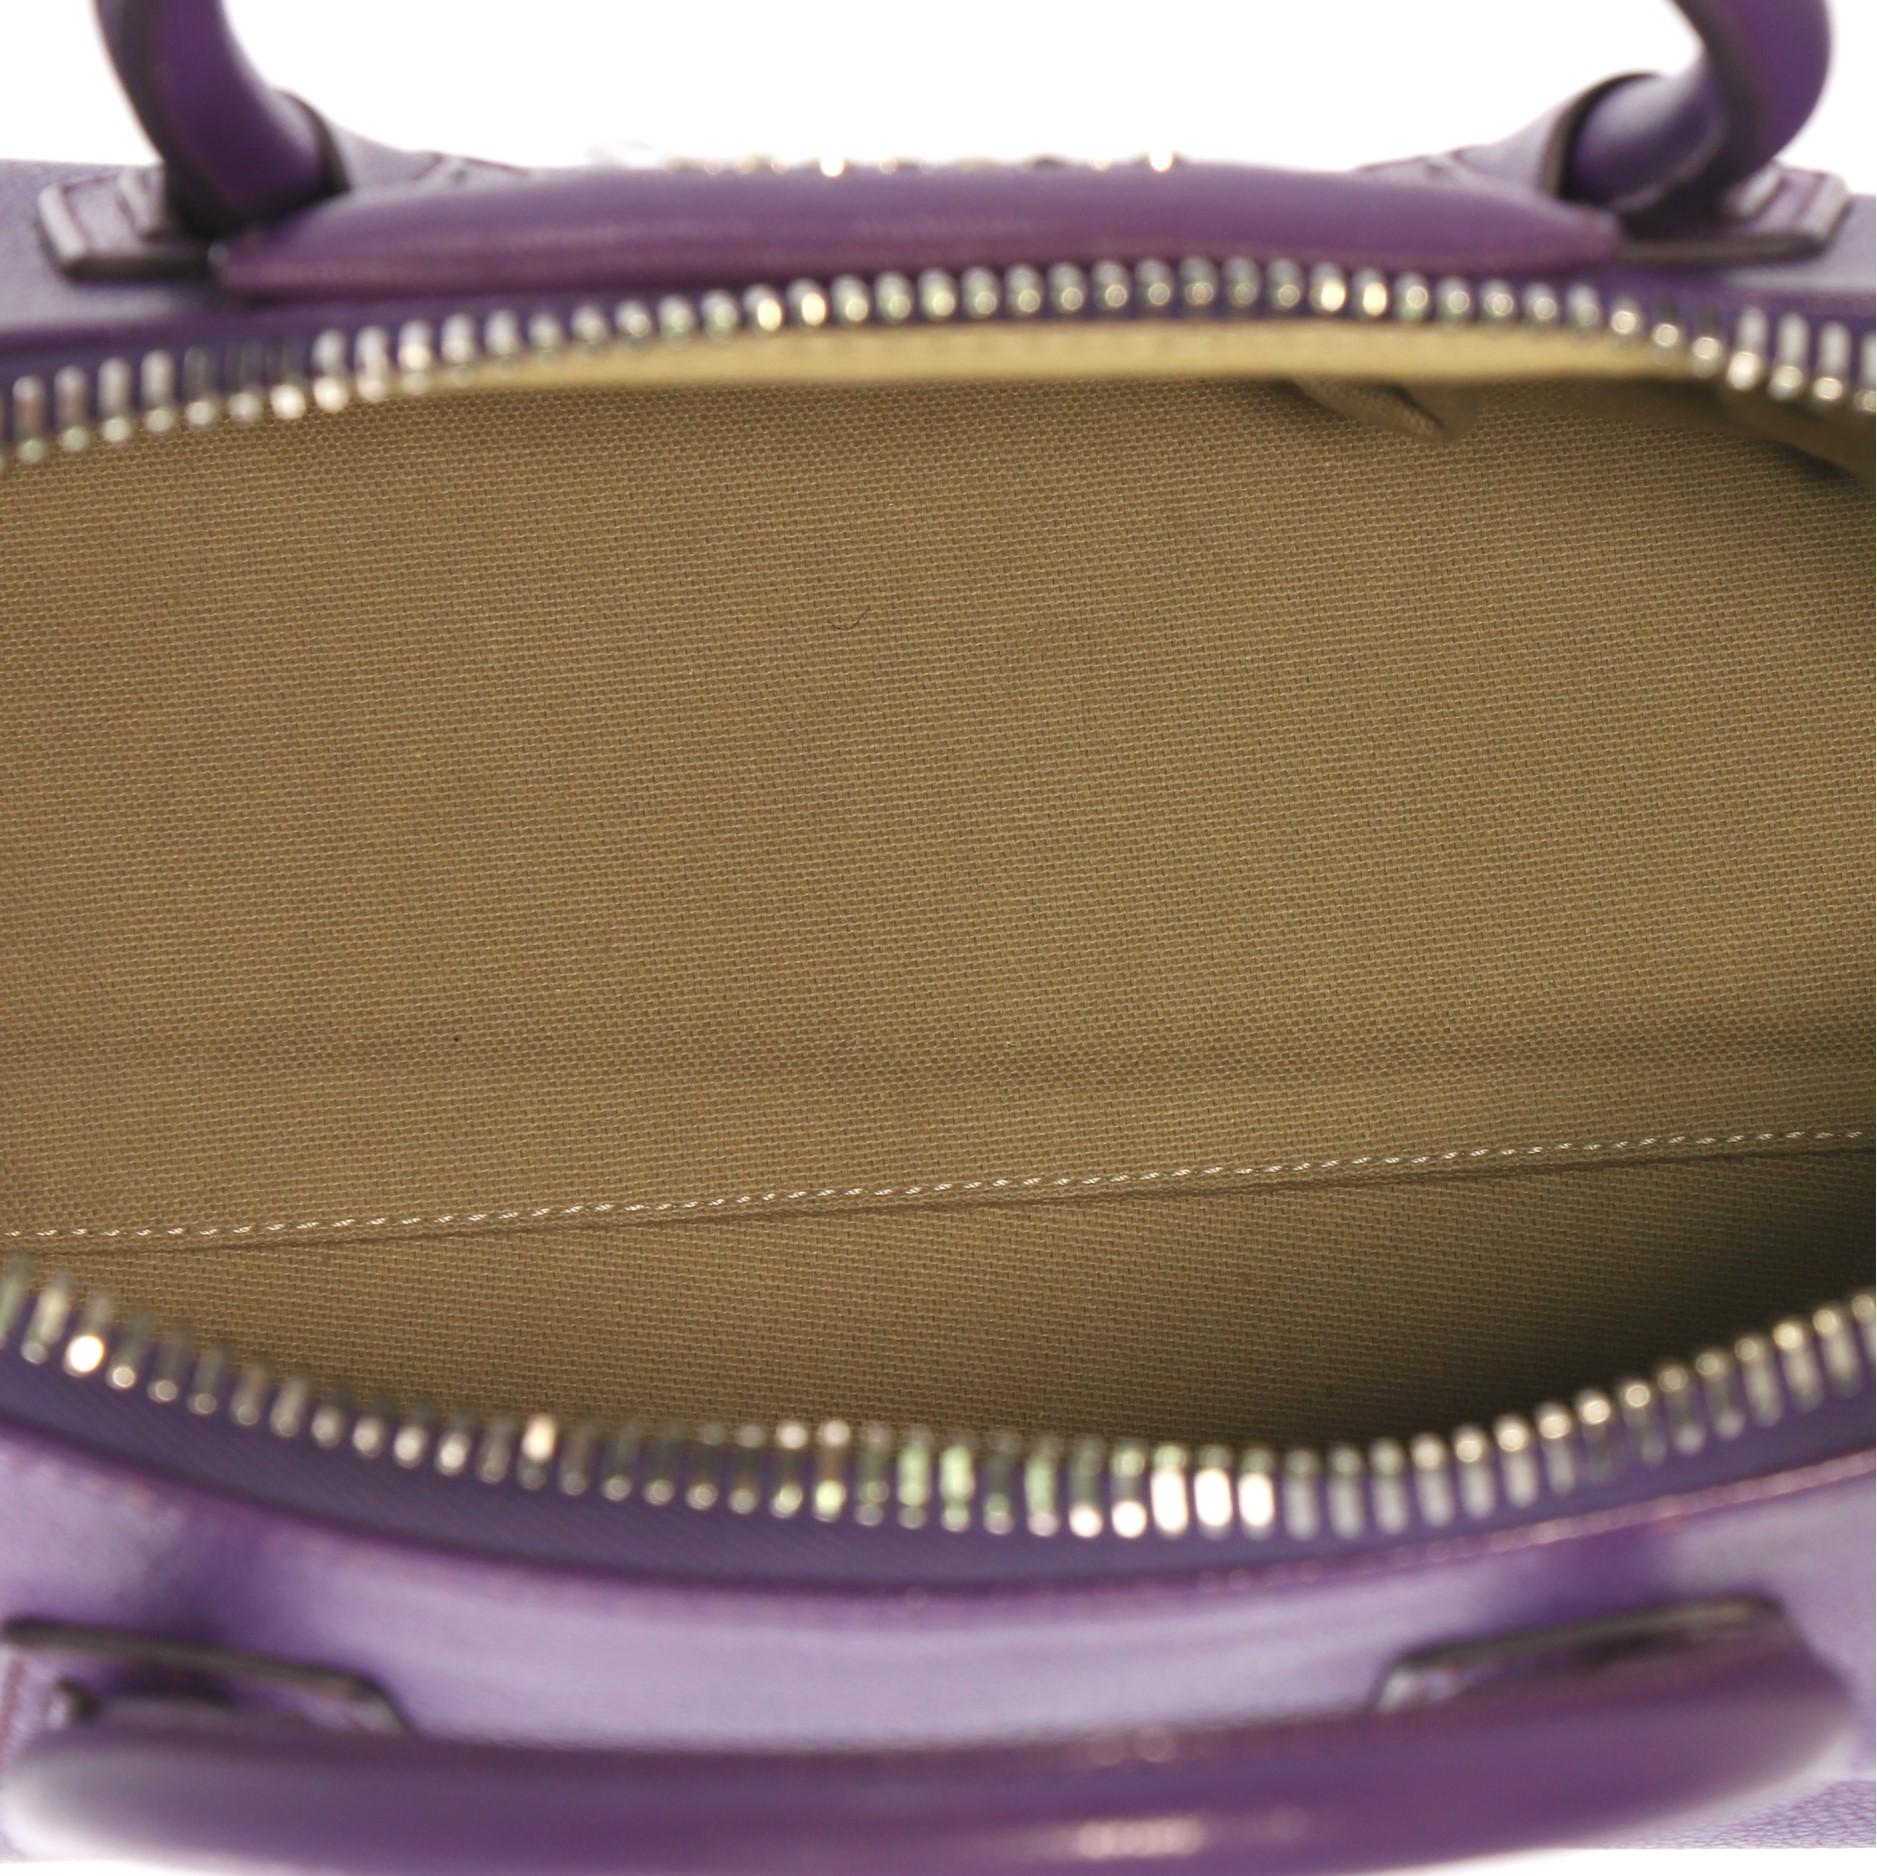 Givenchy Antigona Bag Leather Small 4